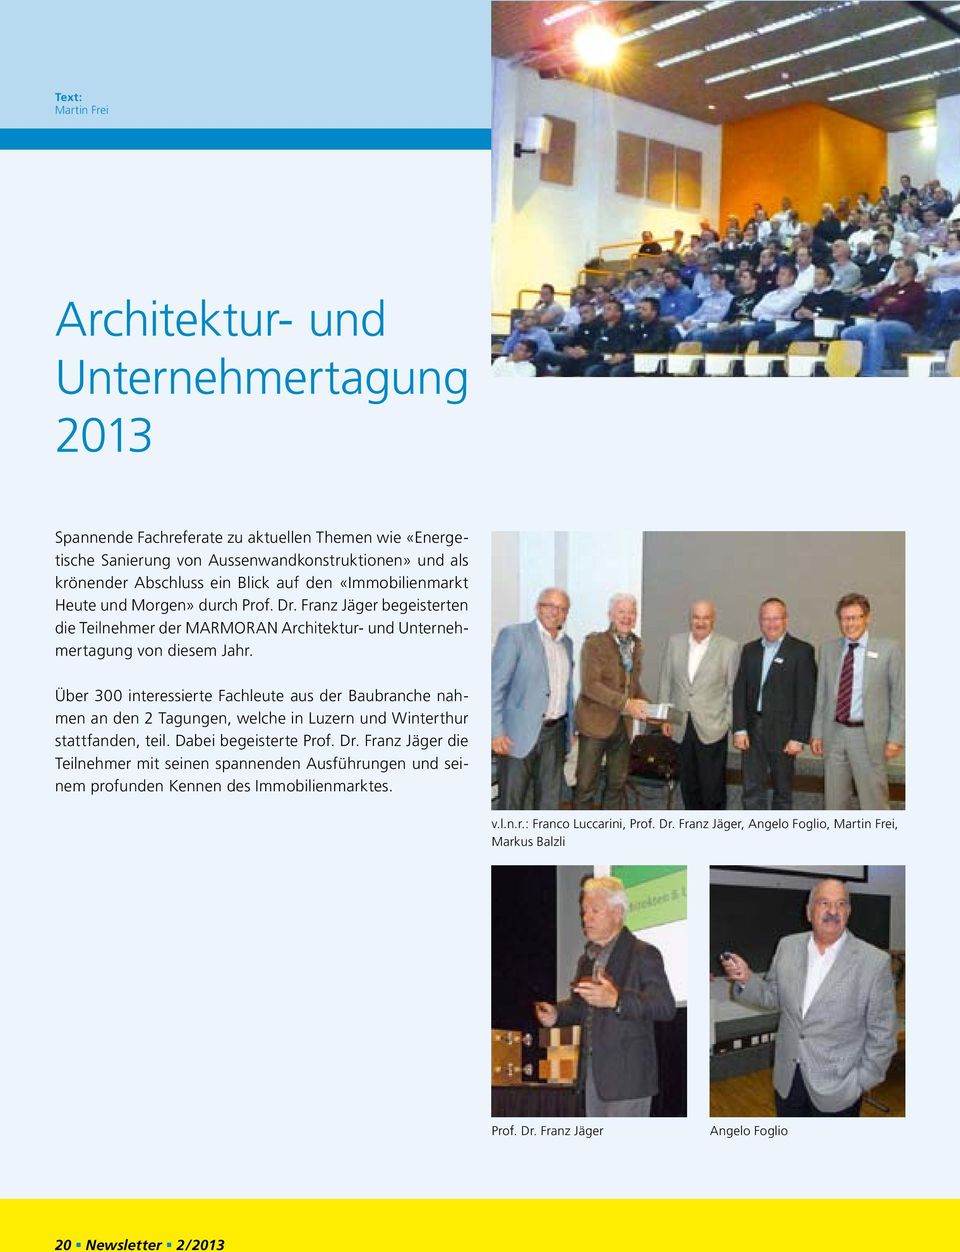 Über 300 interessierte Fachleute aus der Baubranche nahmen an den 2 Tagungen, welche in Luzern und Winterthur stattfanden, teil. Dabei begeisterte Prof. Dr.